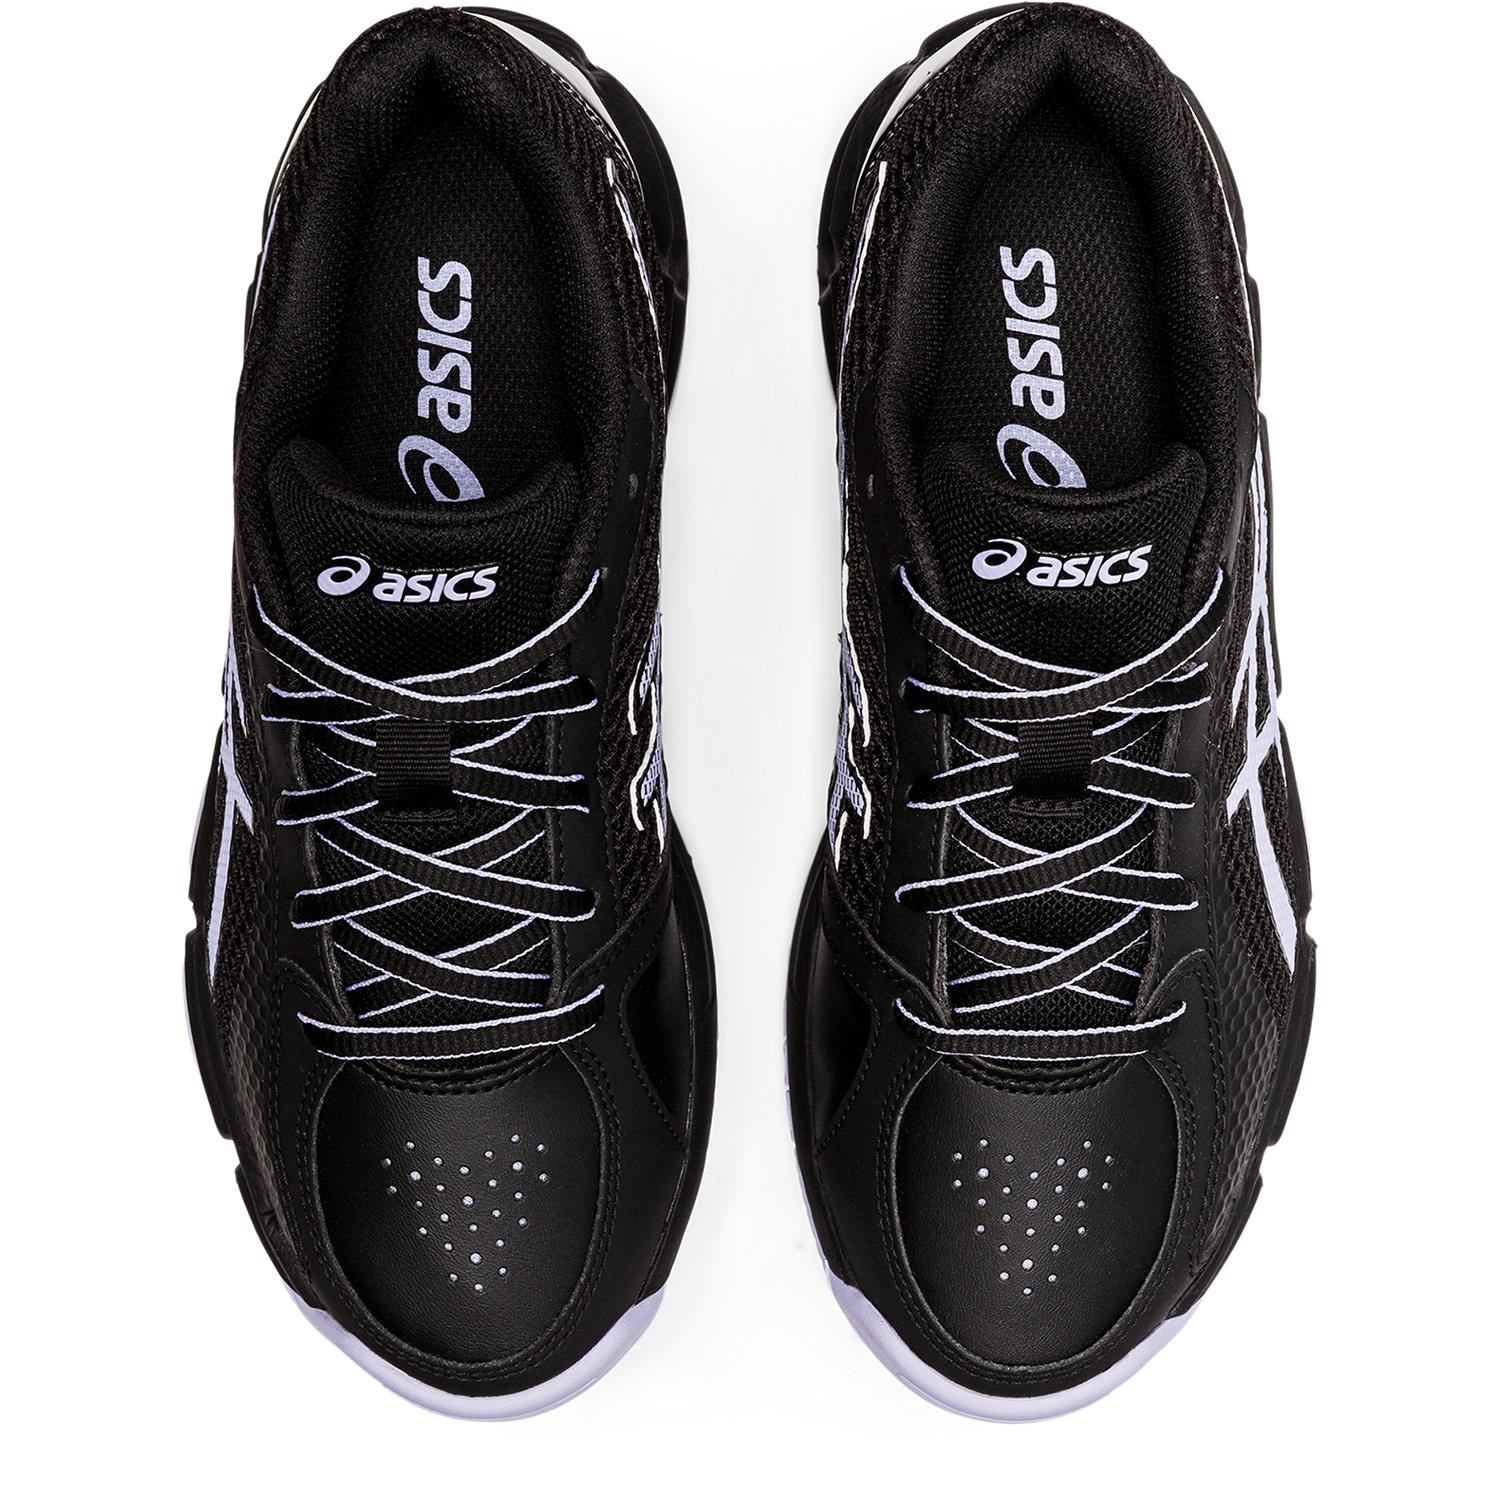 Asics Gel Netburner Super GS - Kids Netball Shoes - Black/Vapor ...